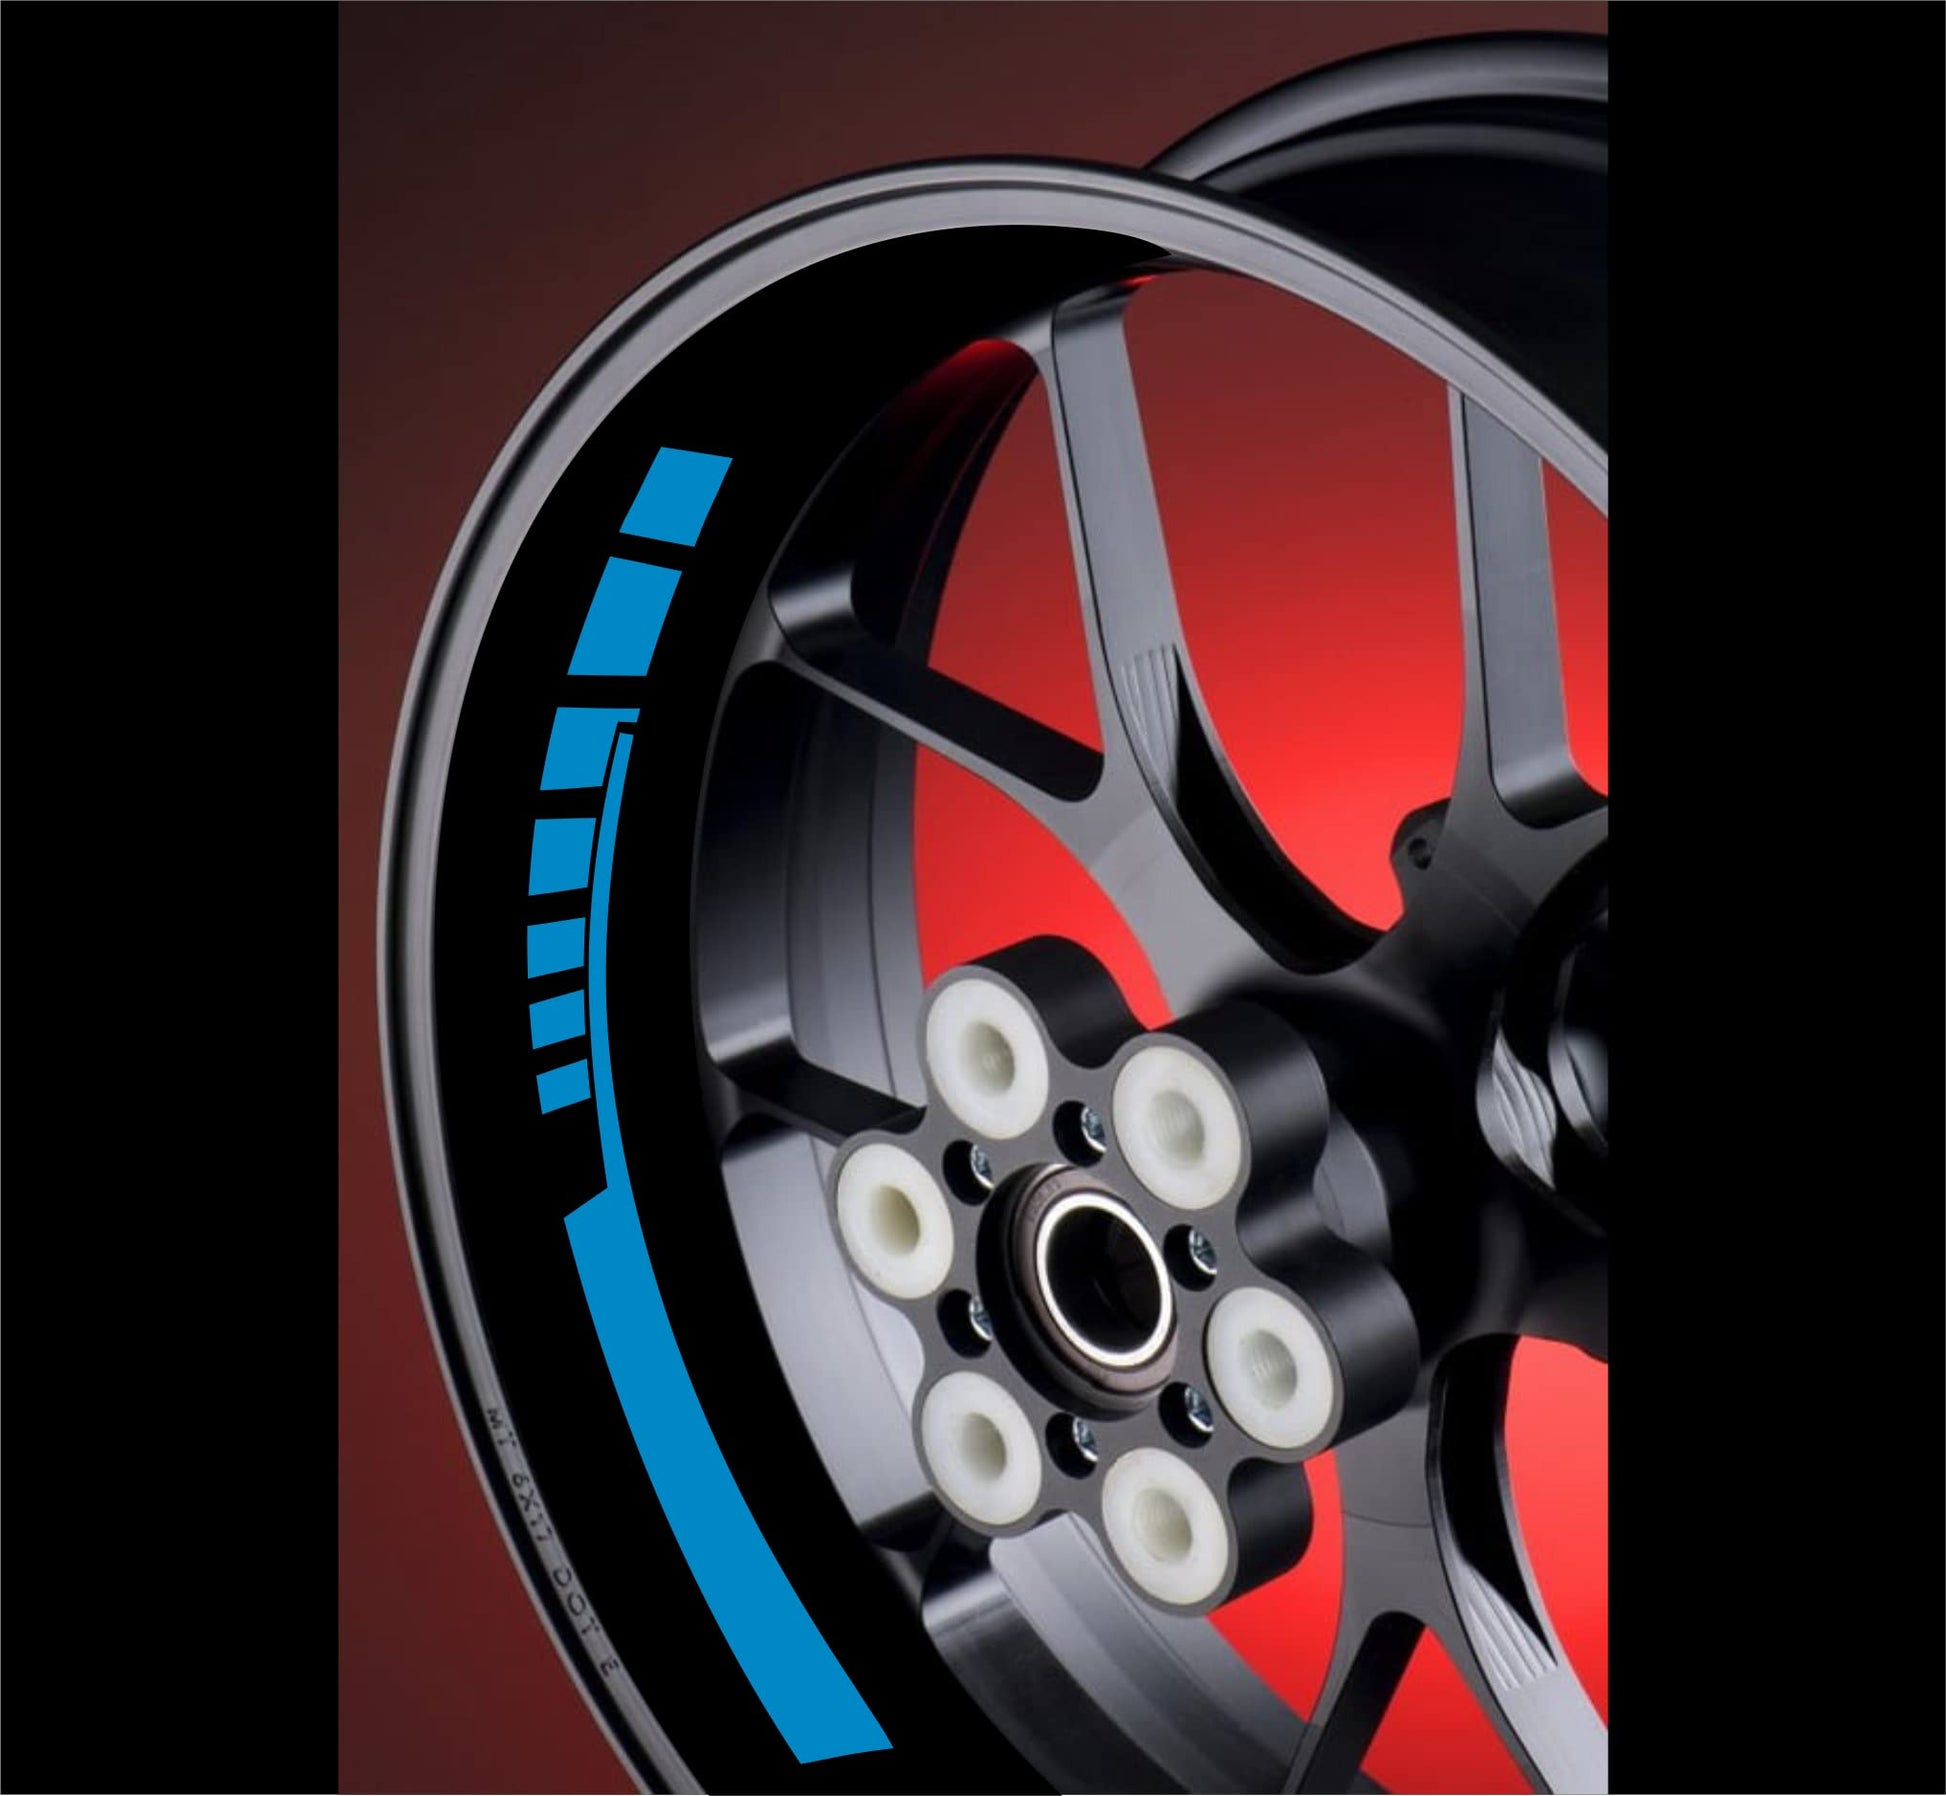 DualColorStampe Adesivi interno cerchi moto 17 POLLICI Compatibili con Ducati Suzuki Kawasaki Triumph cerchioni gomme strisce COD.D0065 a €9.99 solo da DualColorStampe